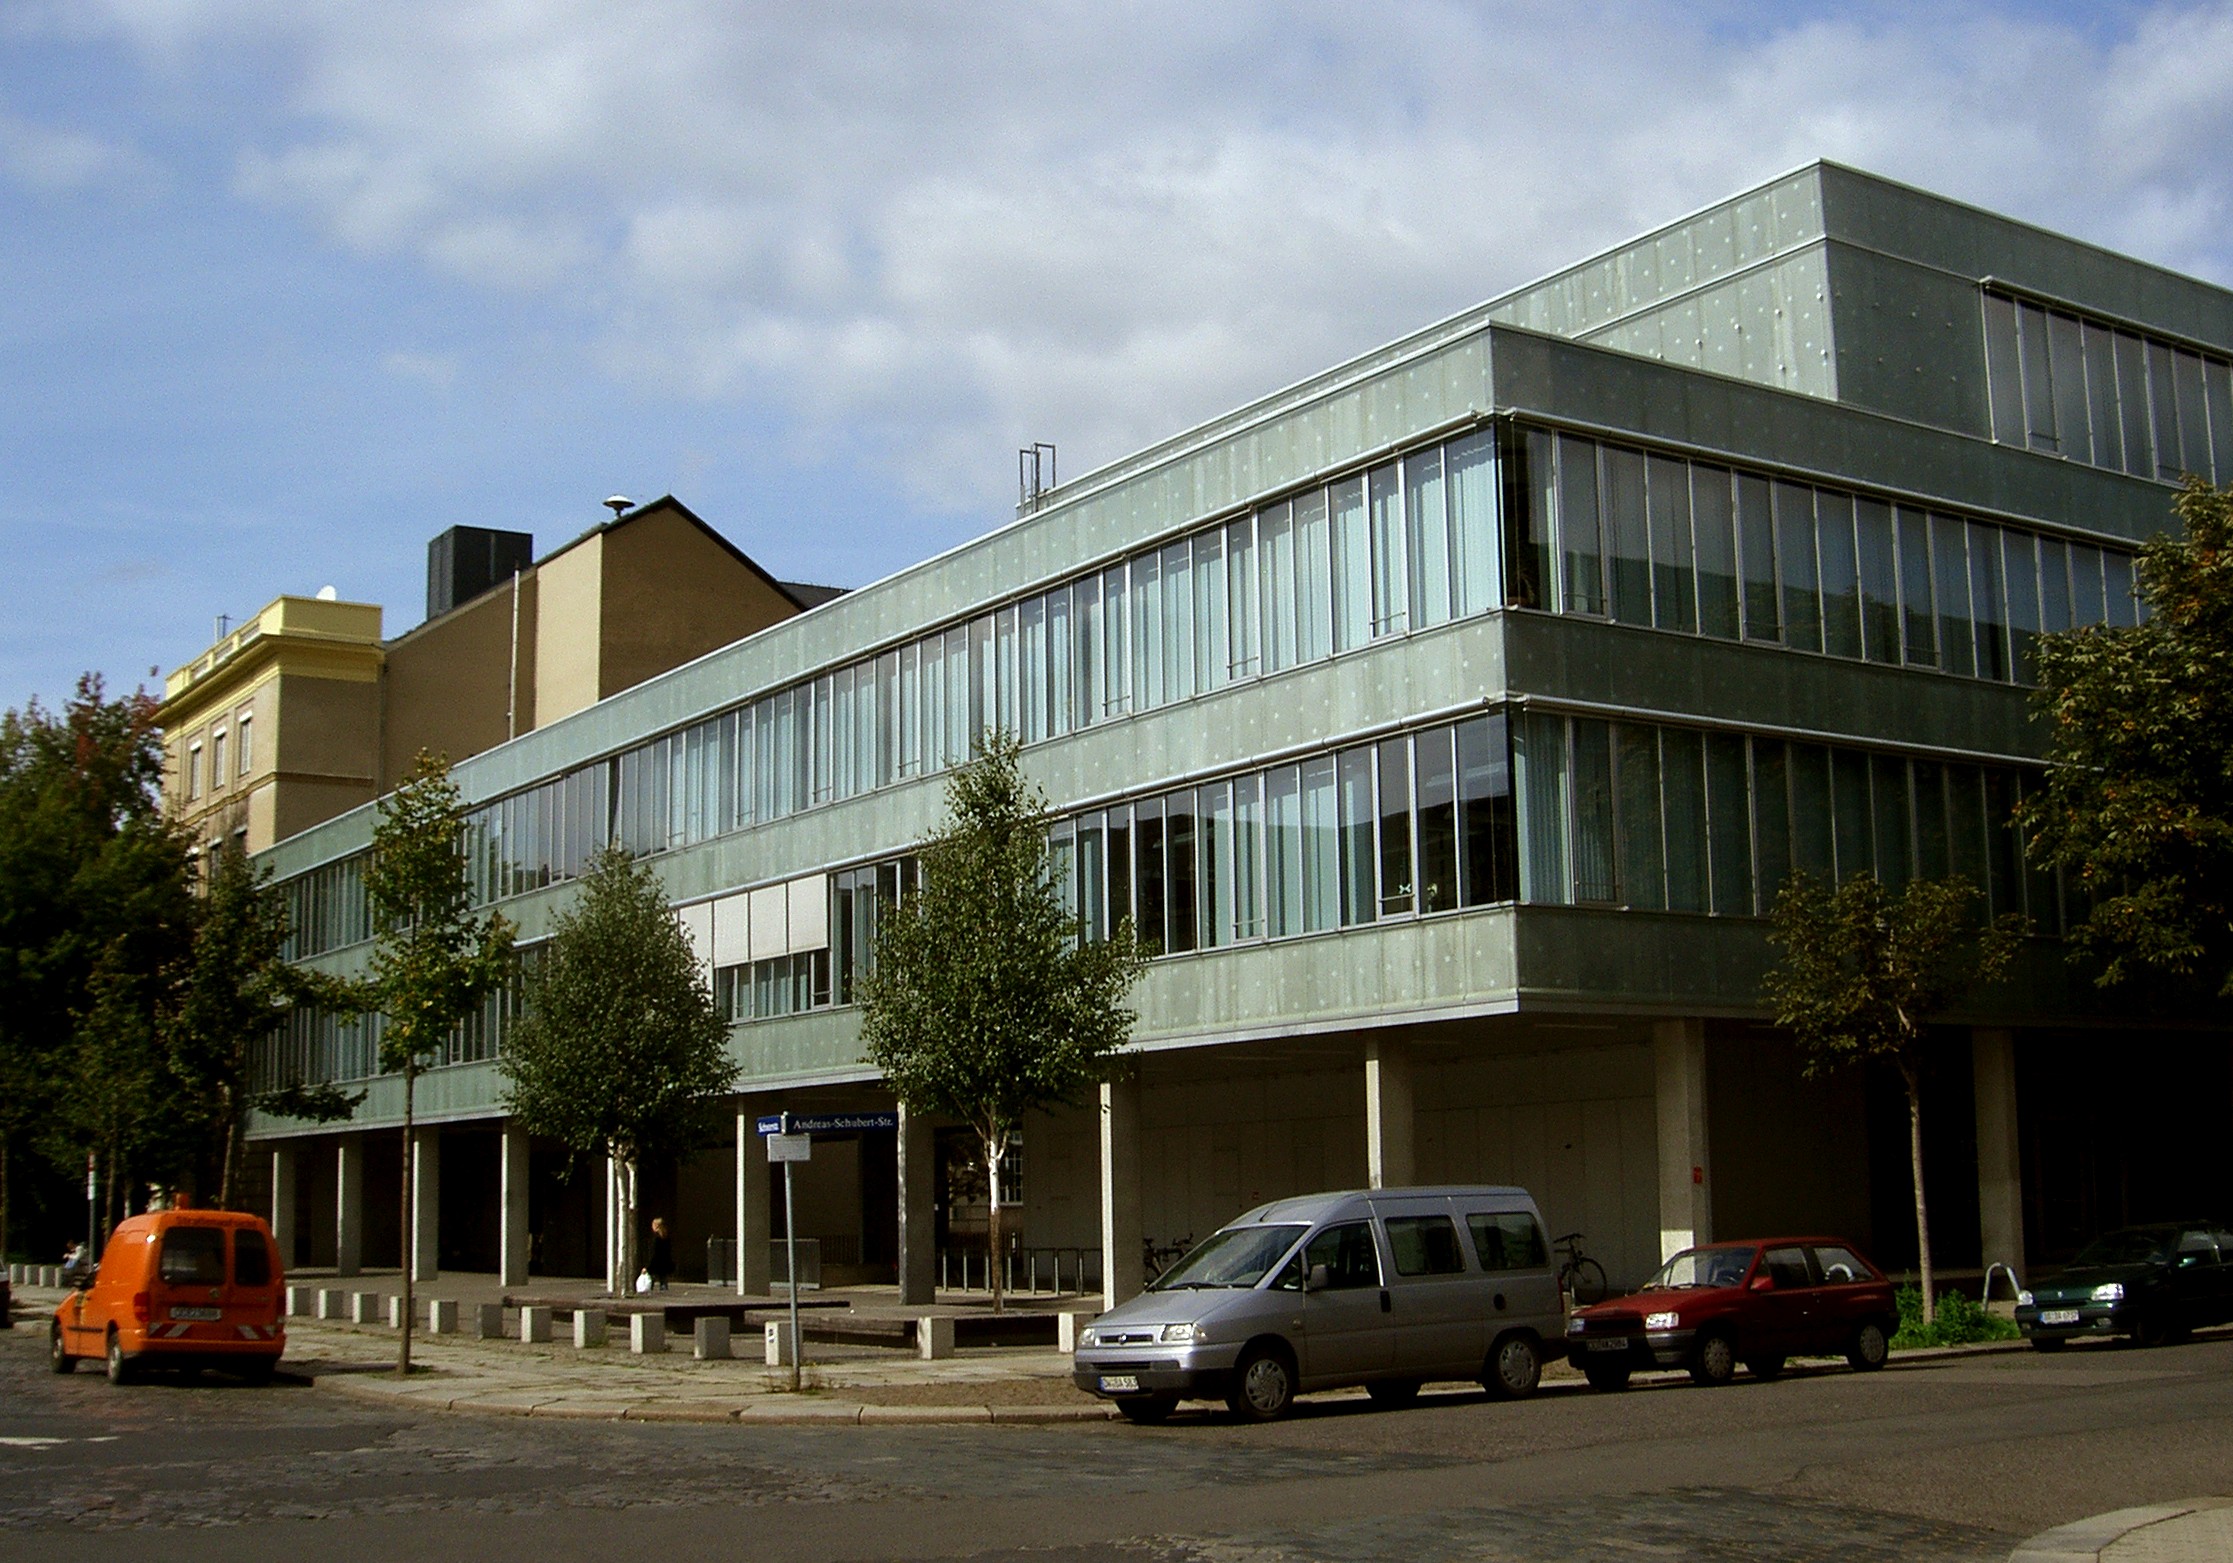 Blick aus südöstlicher Richtung auf die Fassade des N-Gebäudes mit den Physik-Laboren.